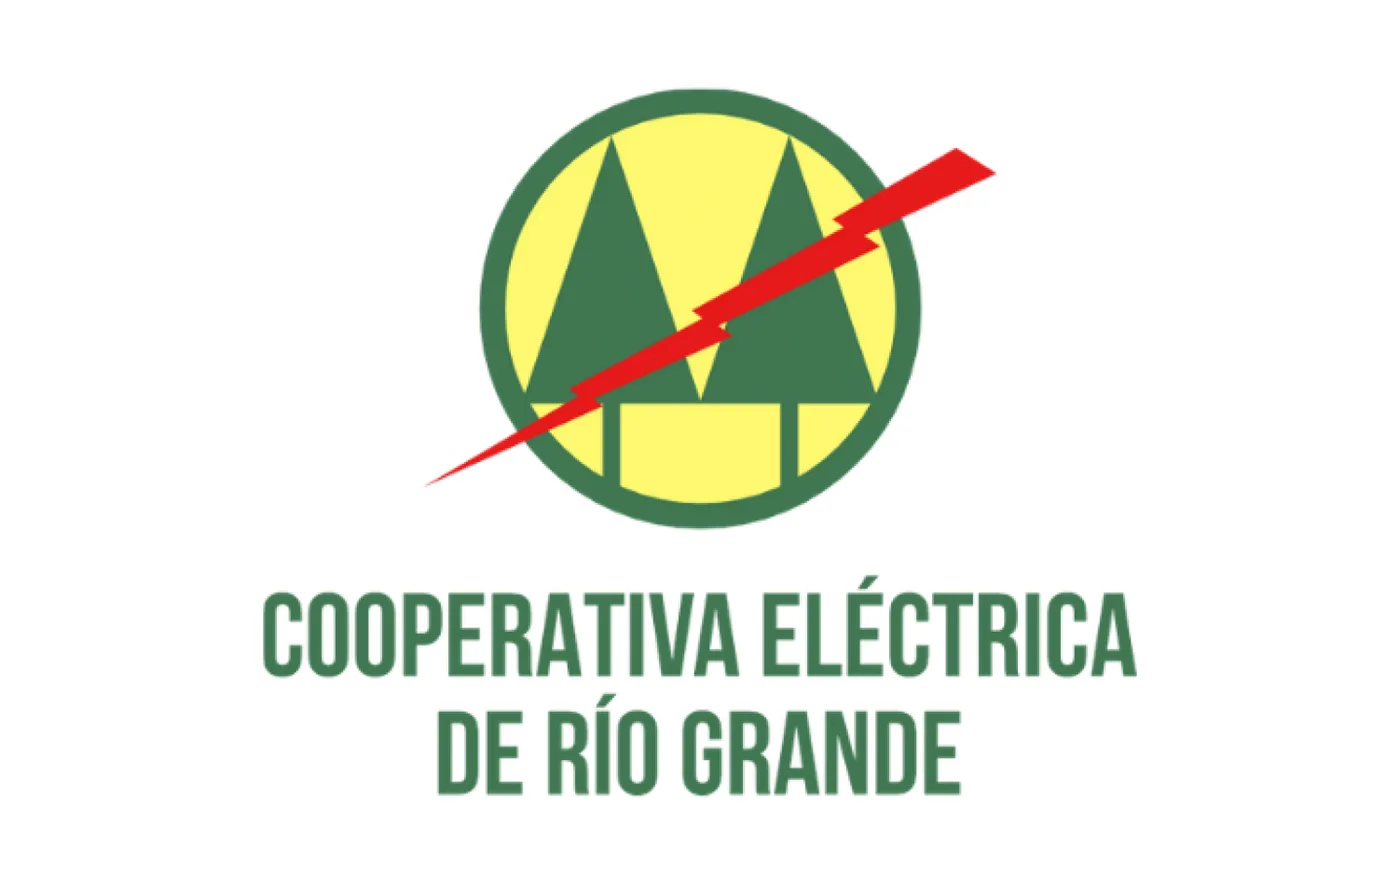 Cooperativa Eléctrica solicitó al COE autorización para reanudar tareas en áreas de servicio